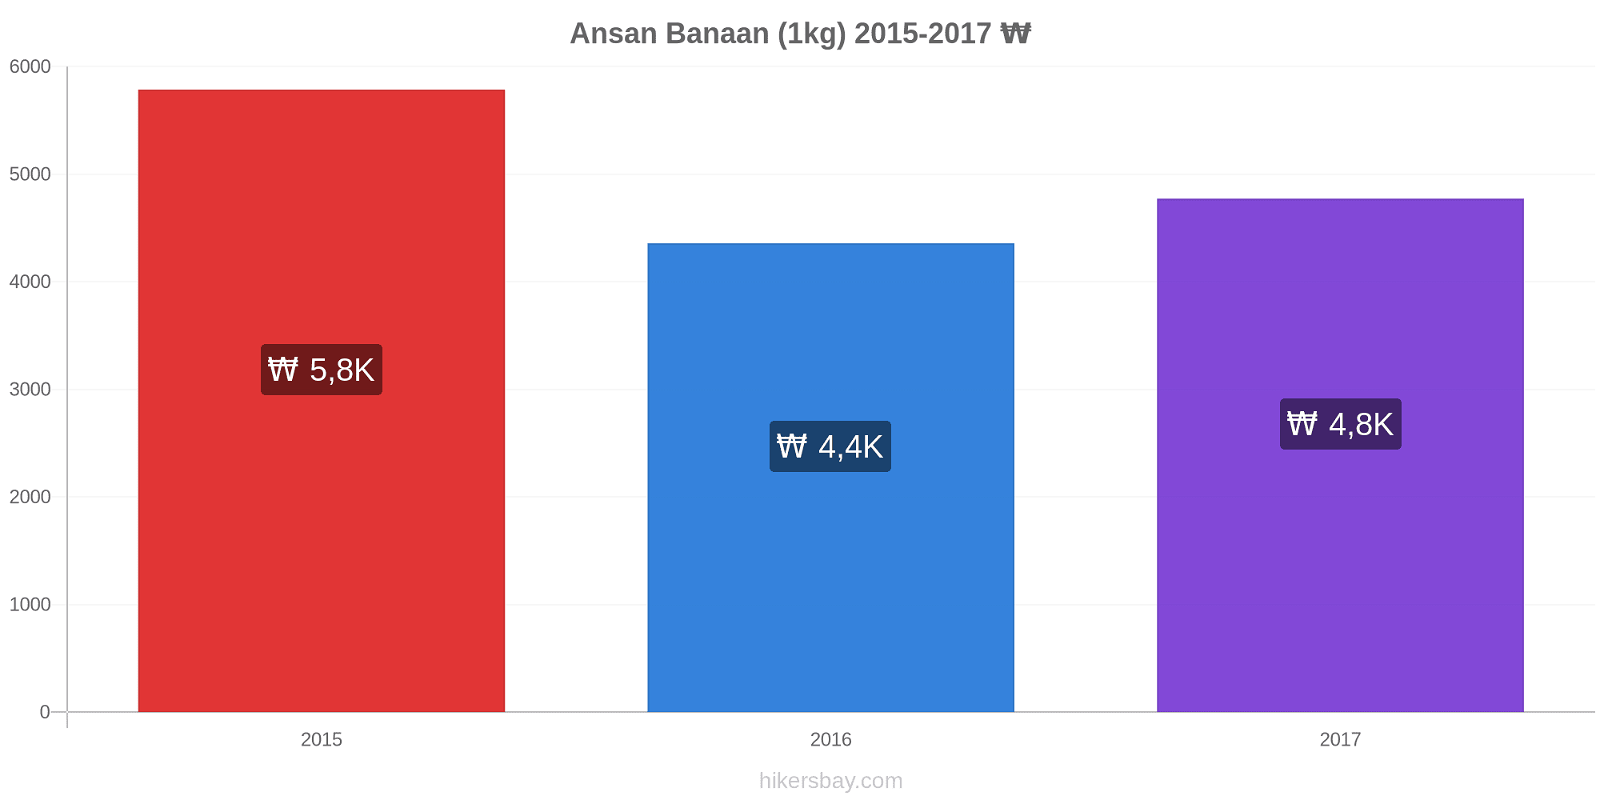 Ansan prijswijzigingen Banaan (1kg) hikersbay.com